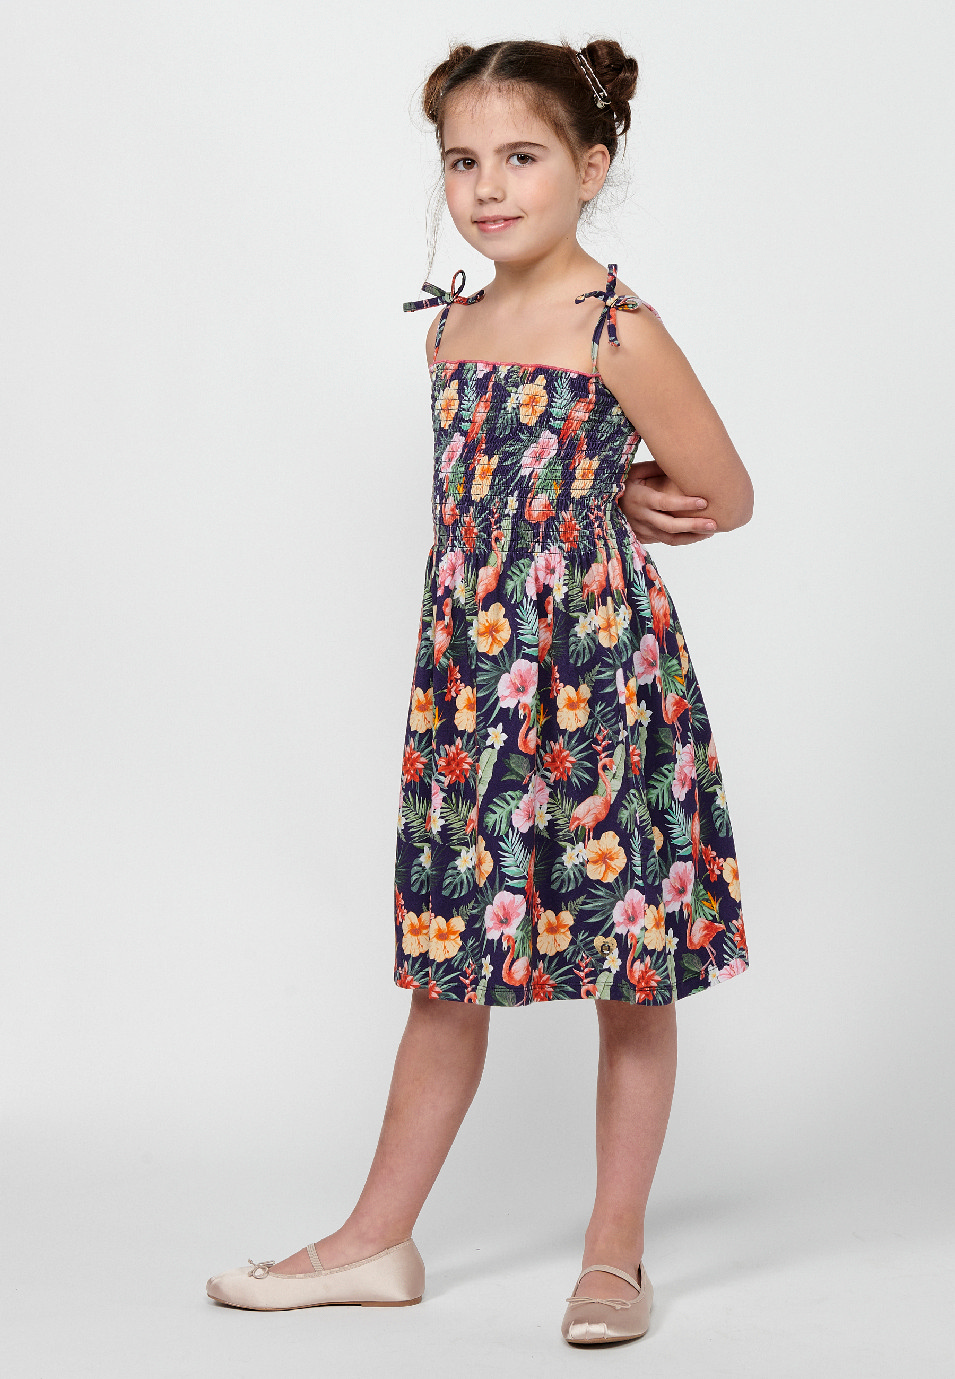 Robe à bretelles pour fille, imprimé floral multicolore, avec taille gommée 3